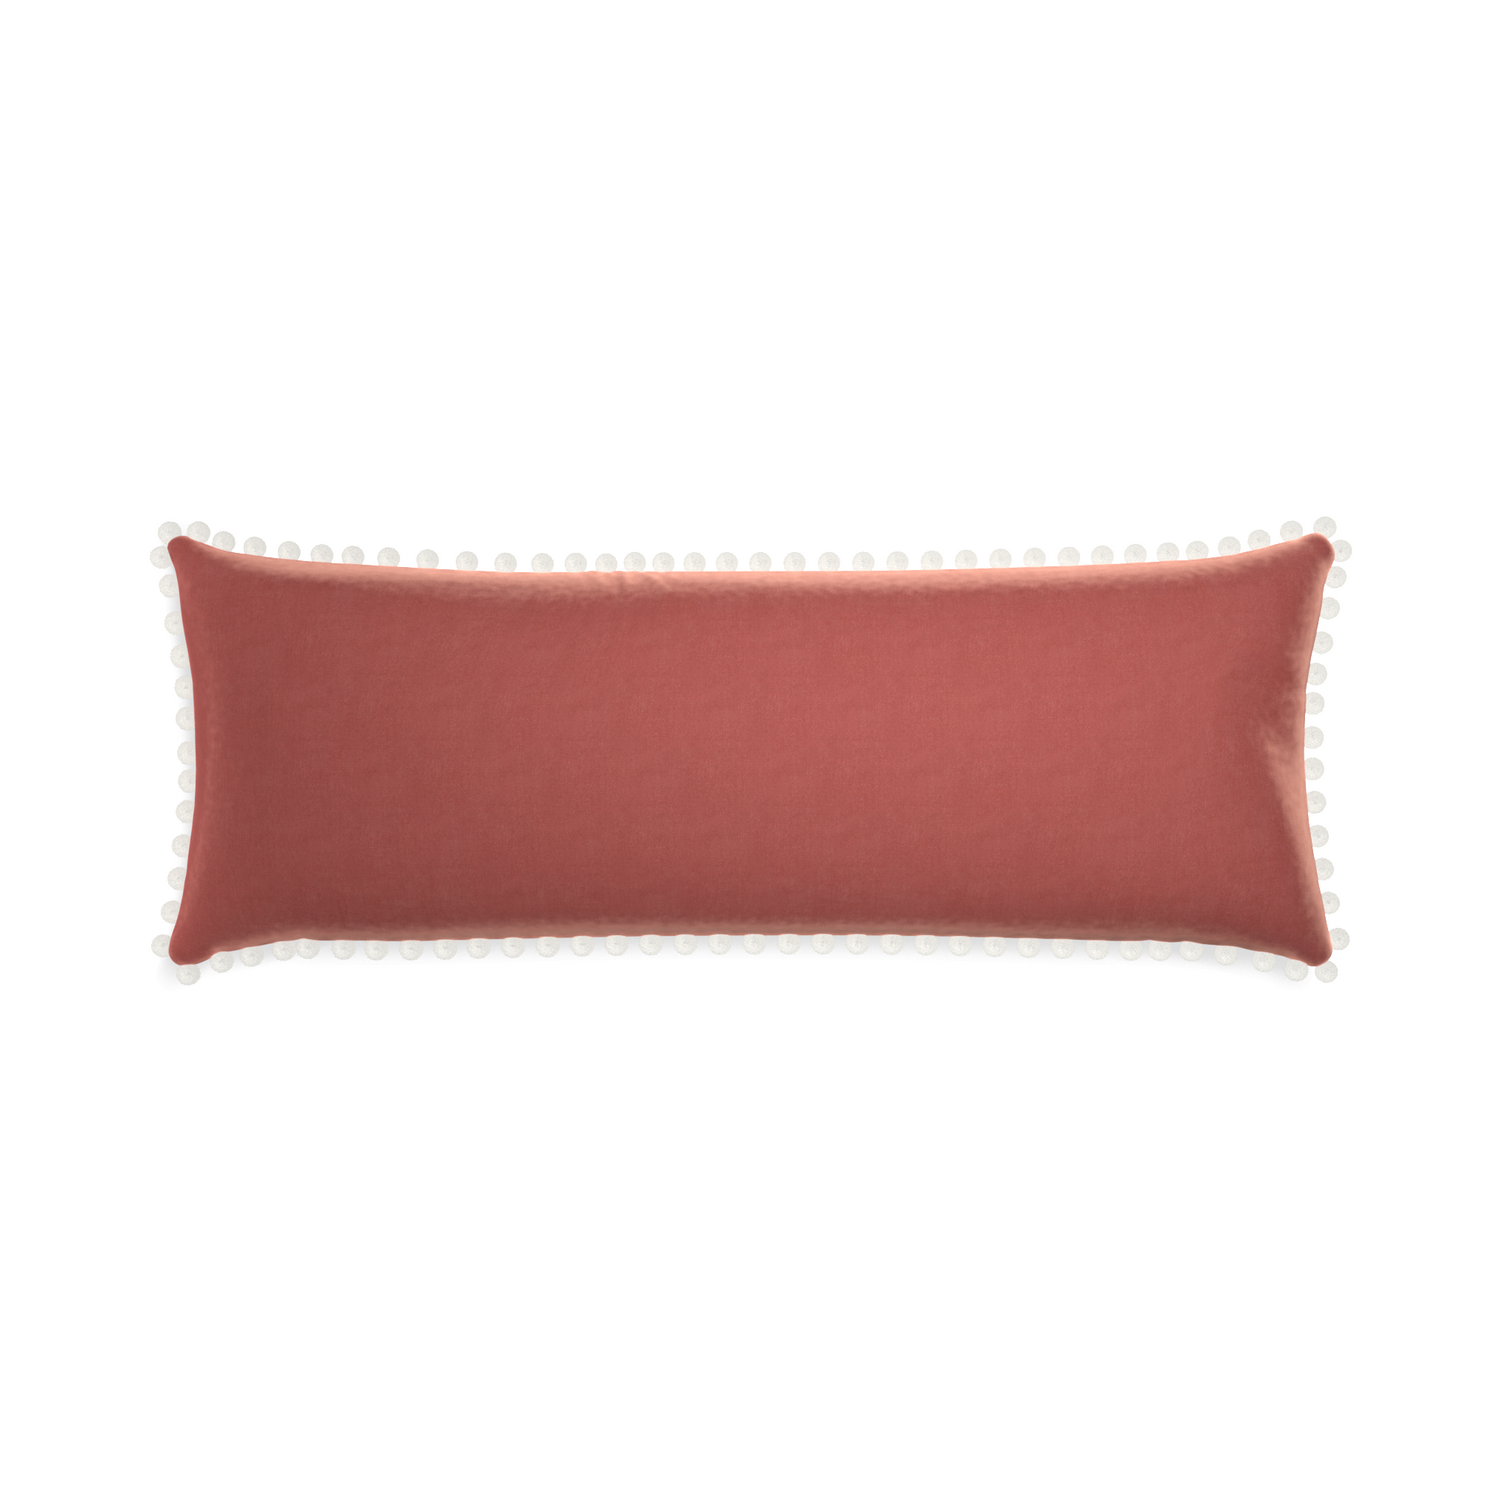 rectangle coral velvet pillow with white pom poms